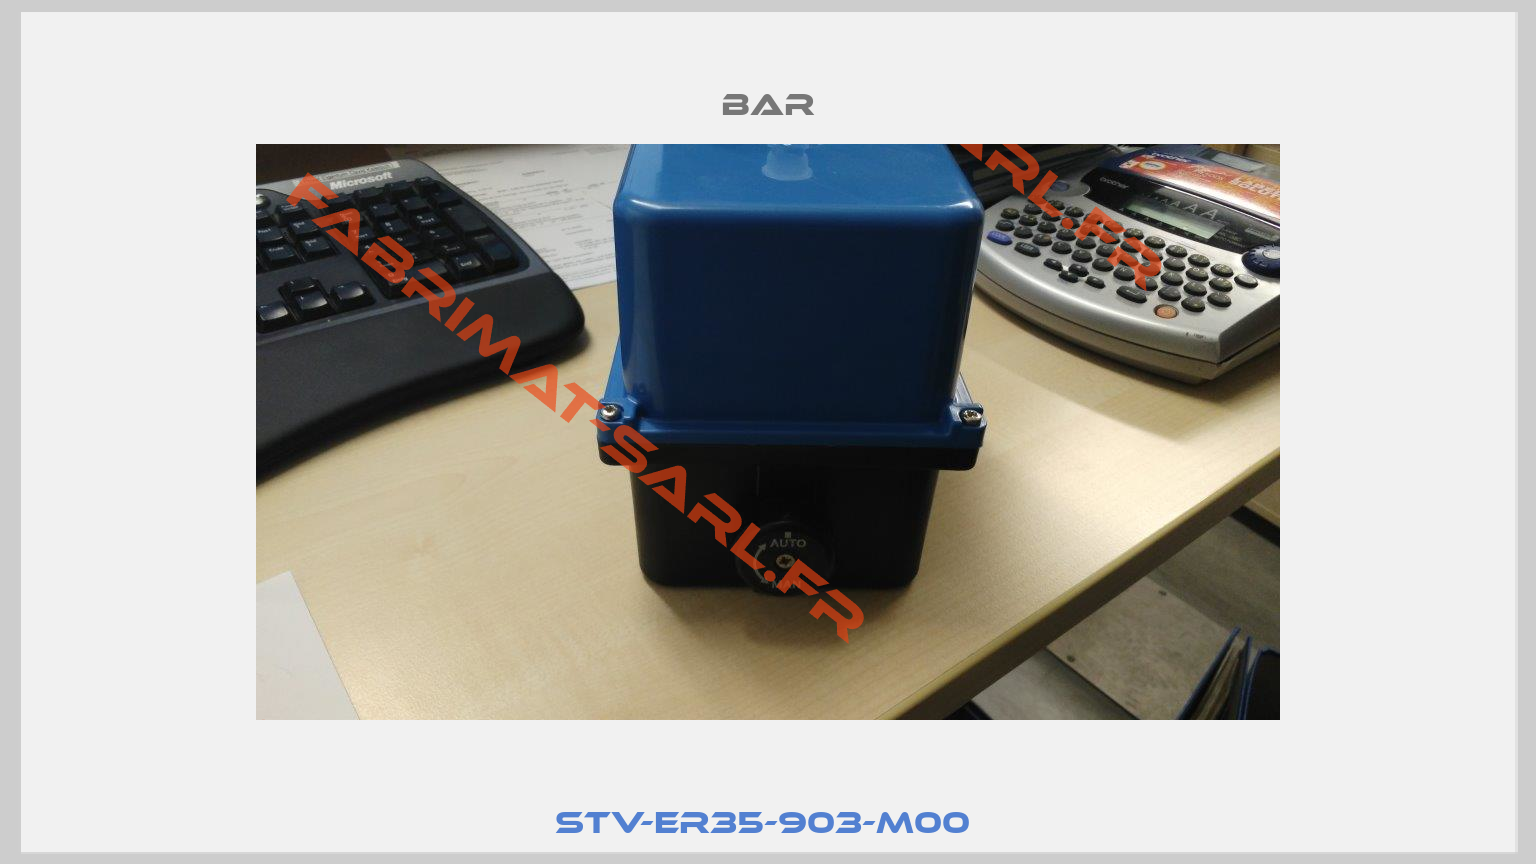 STV-ER35-903-M00 -0